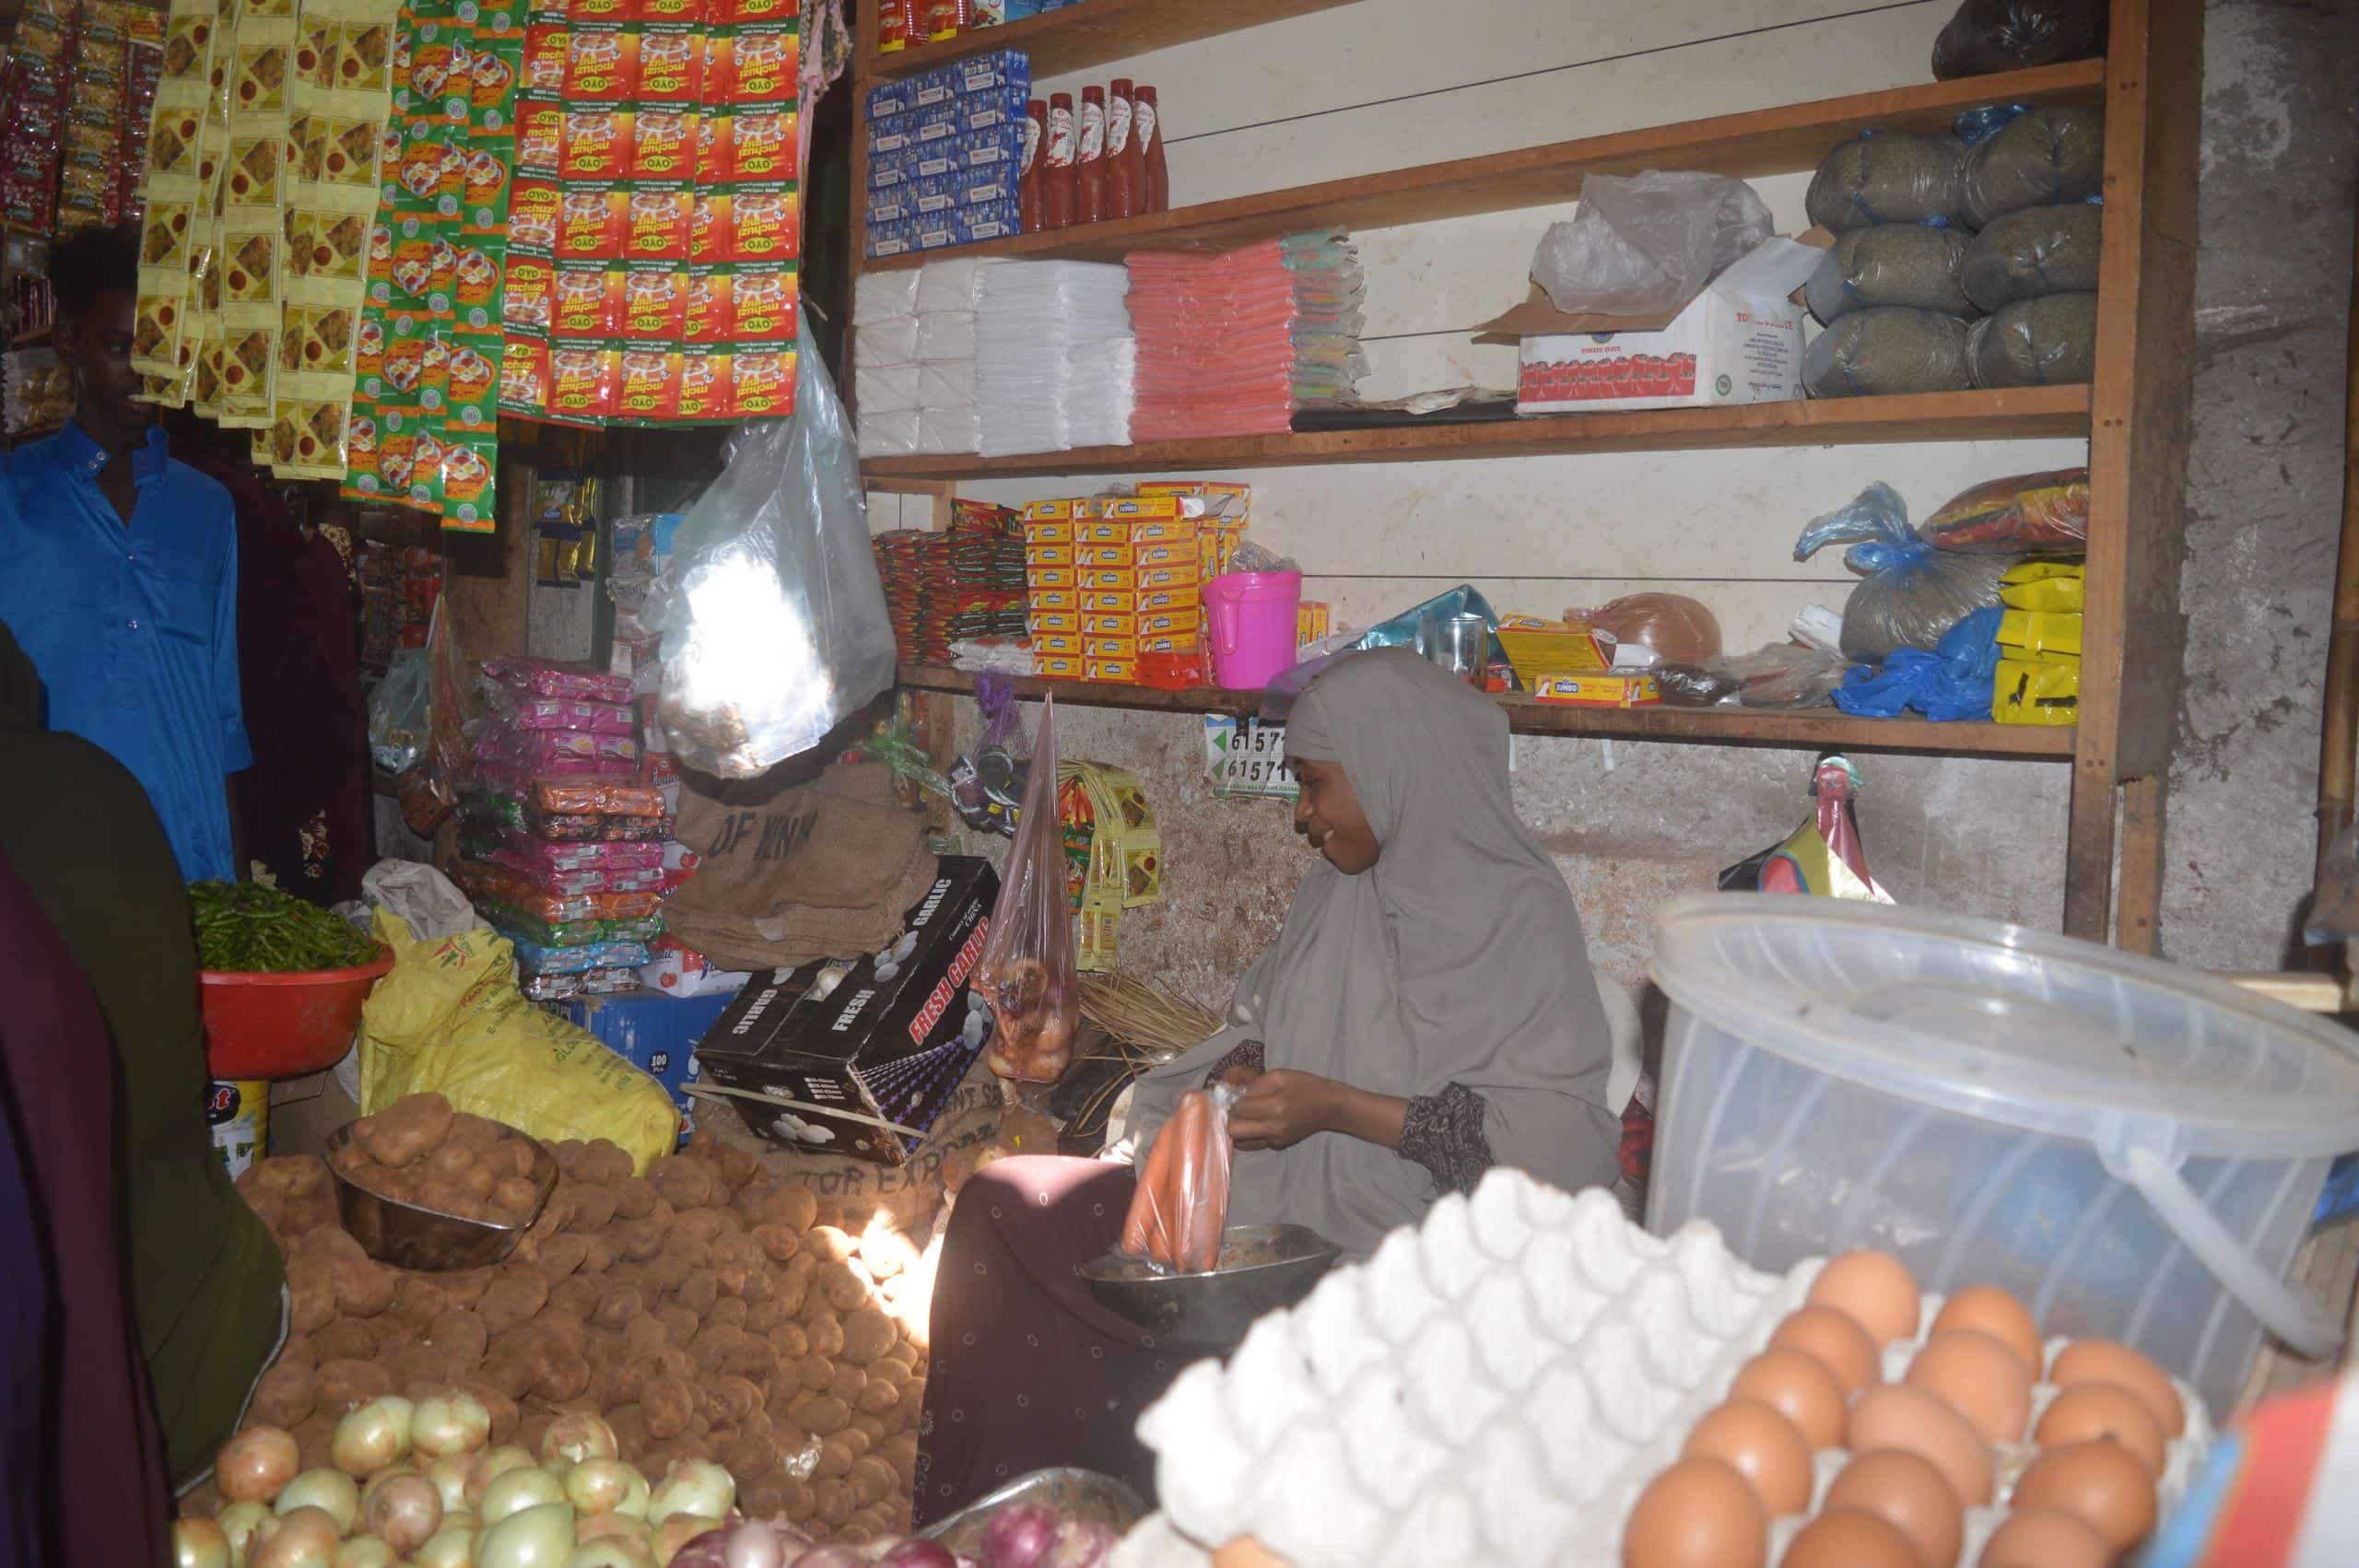 entrepreneur in her shop in somalia